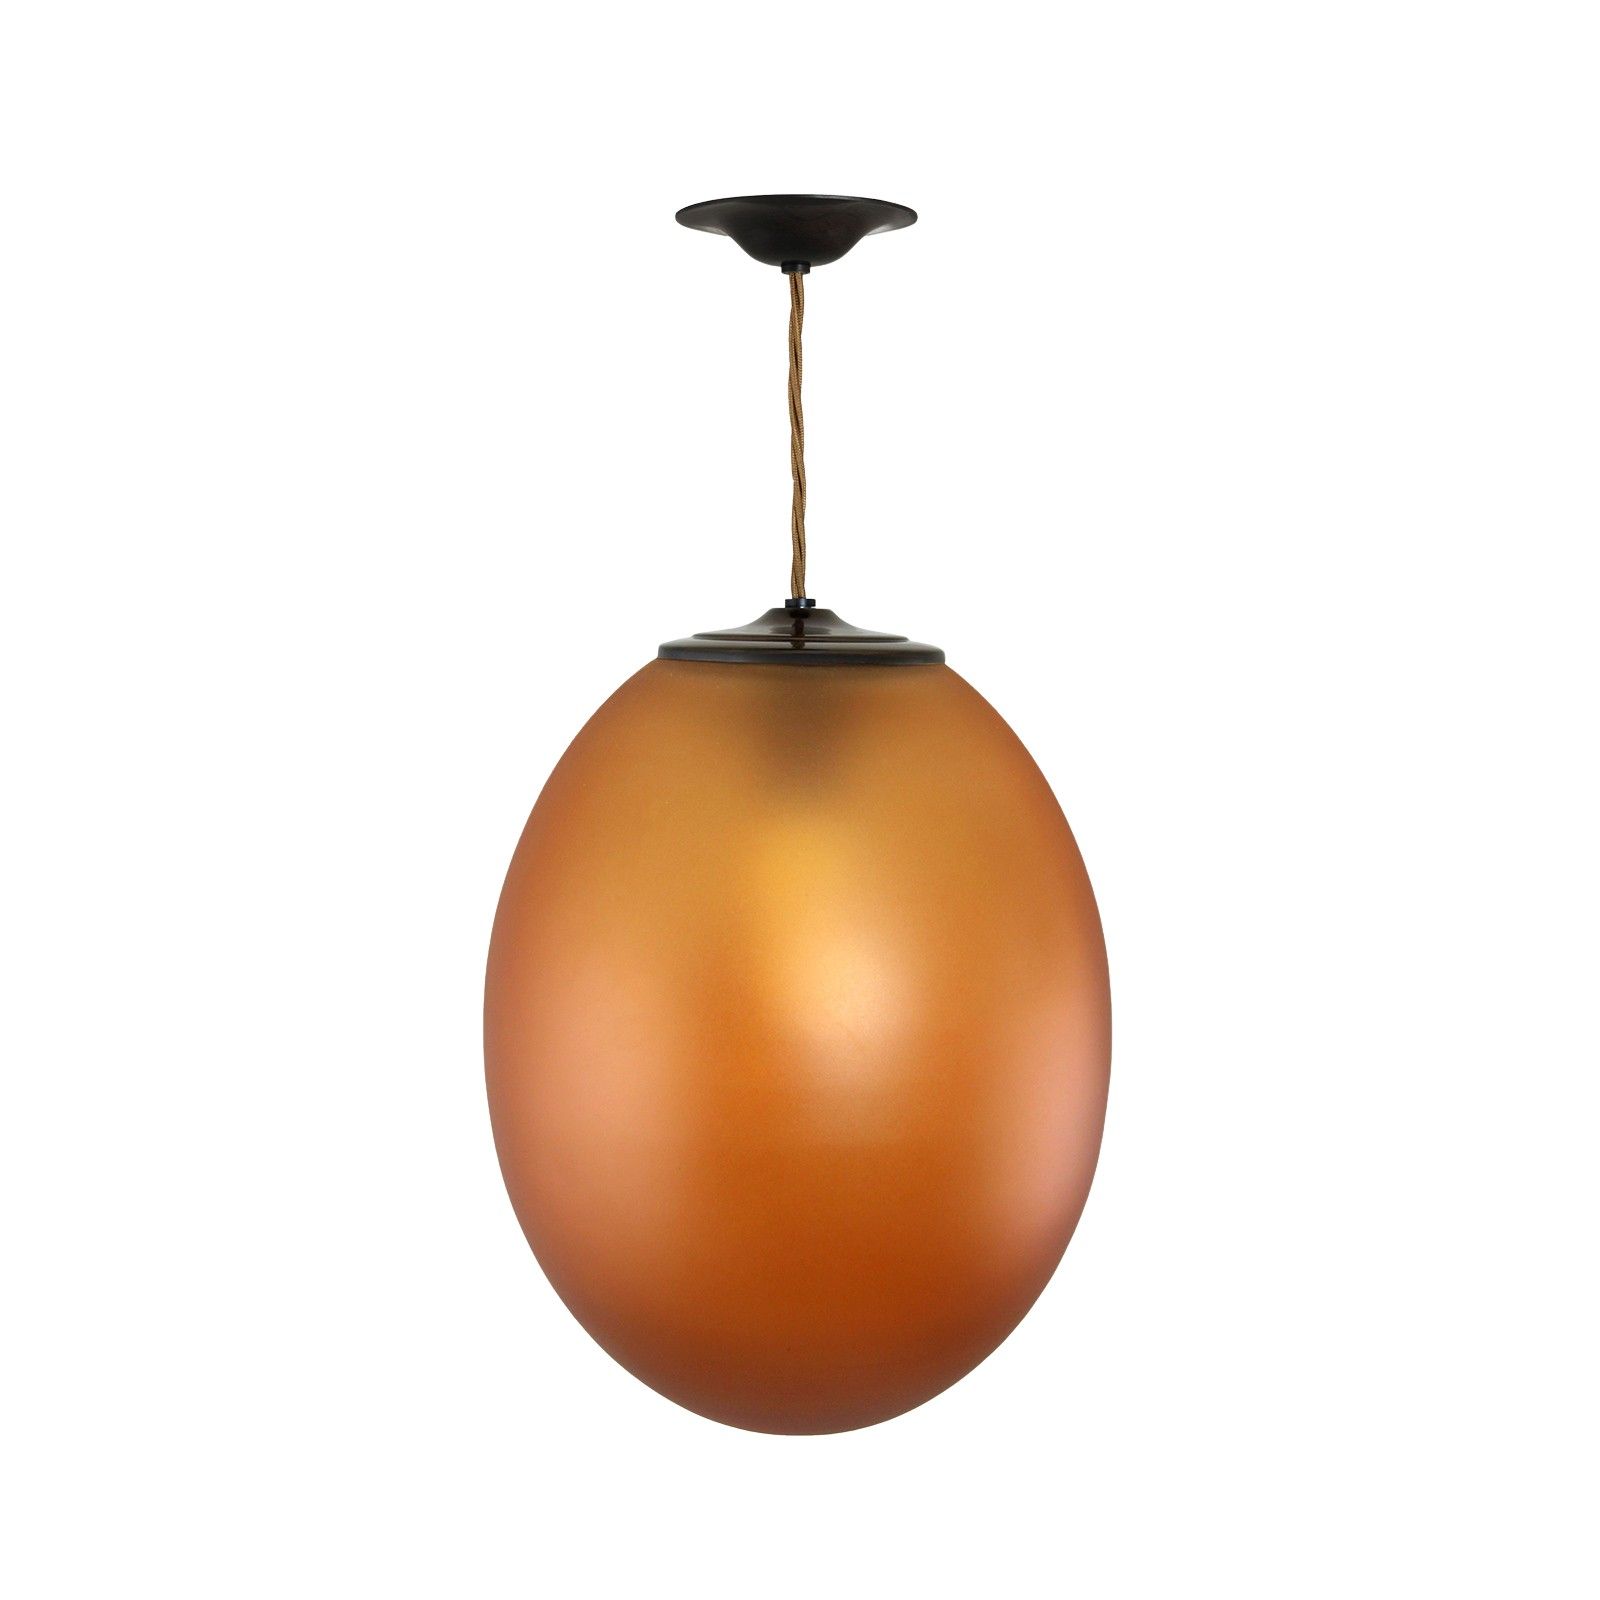 Egg ceiling pendant